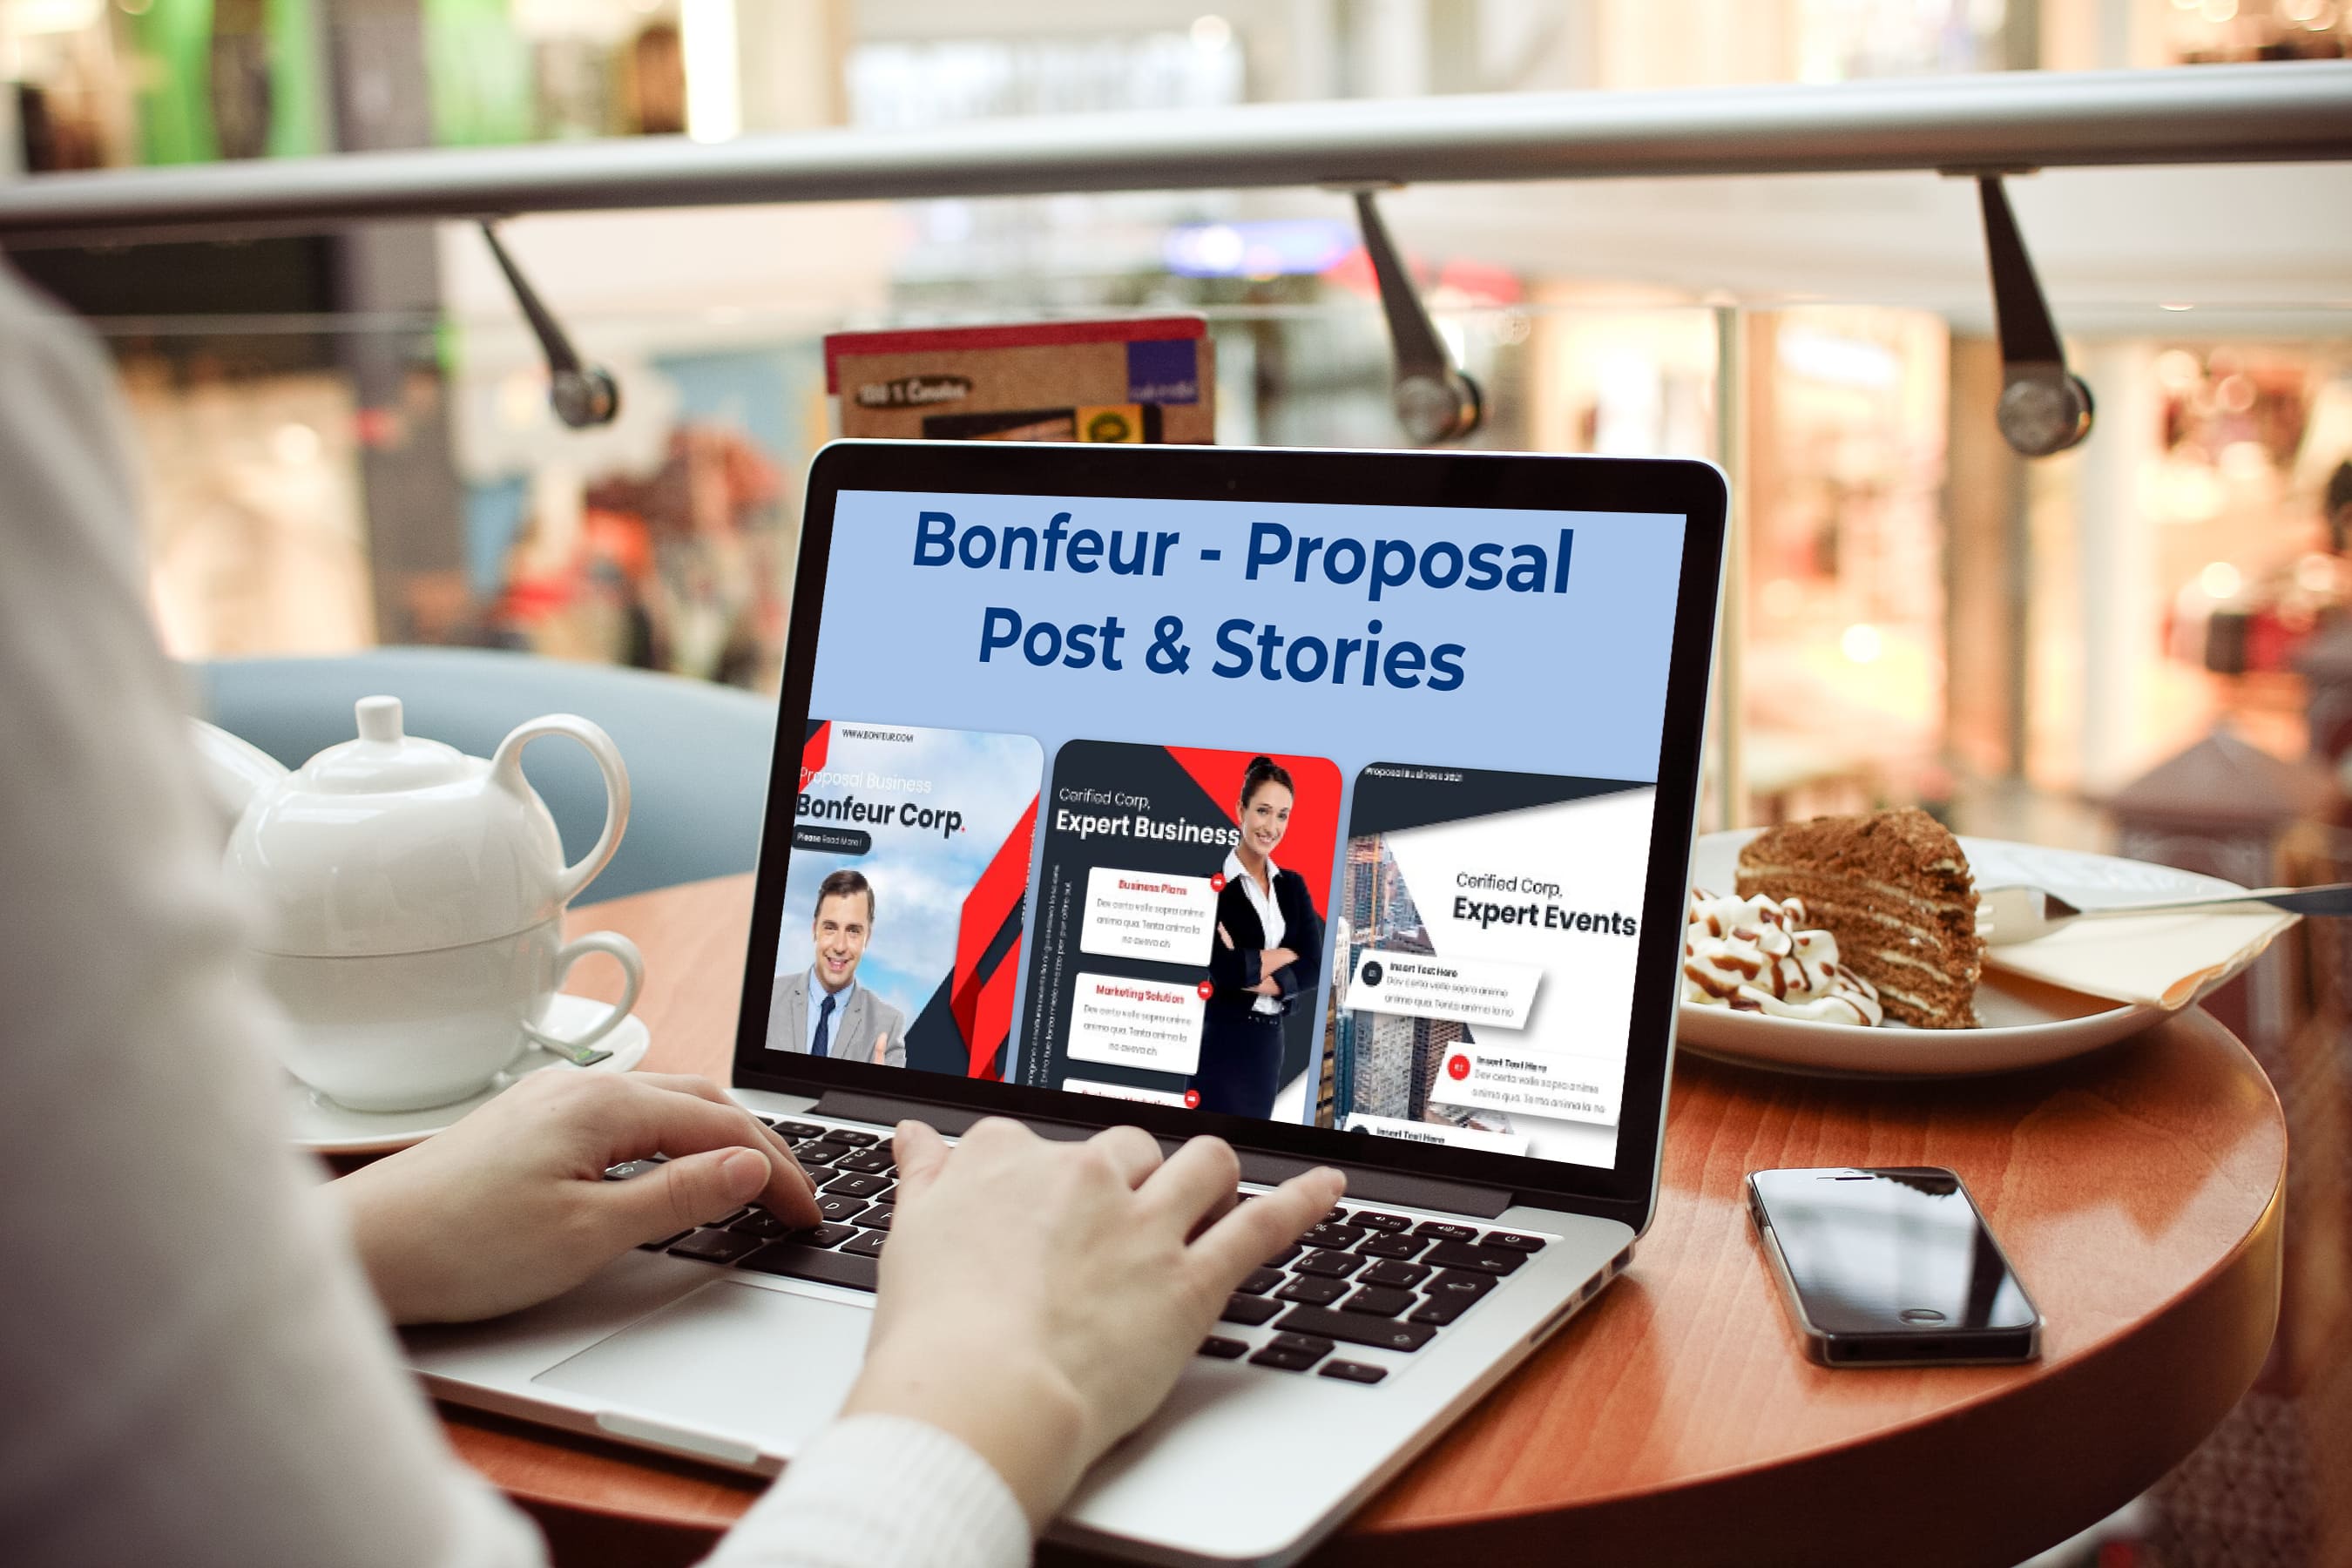 Laptop option of the Bonfeur - Proposal Post & Stories.